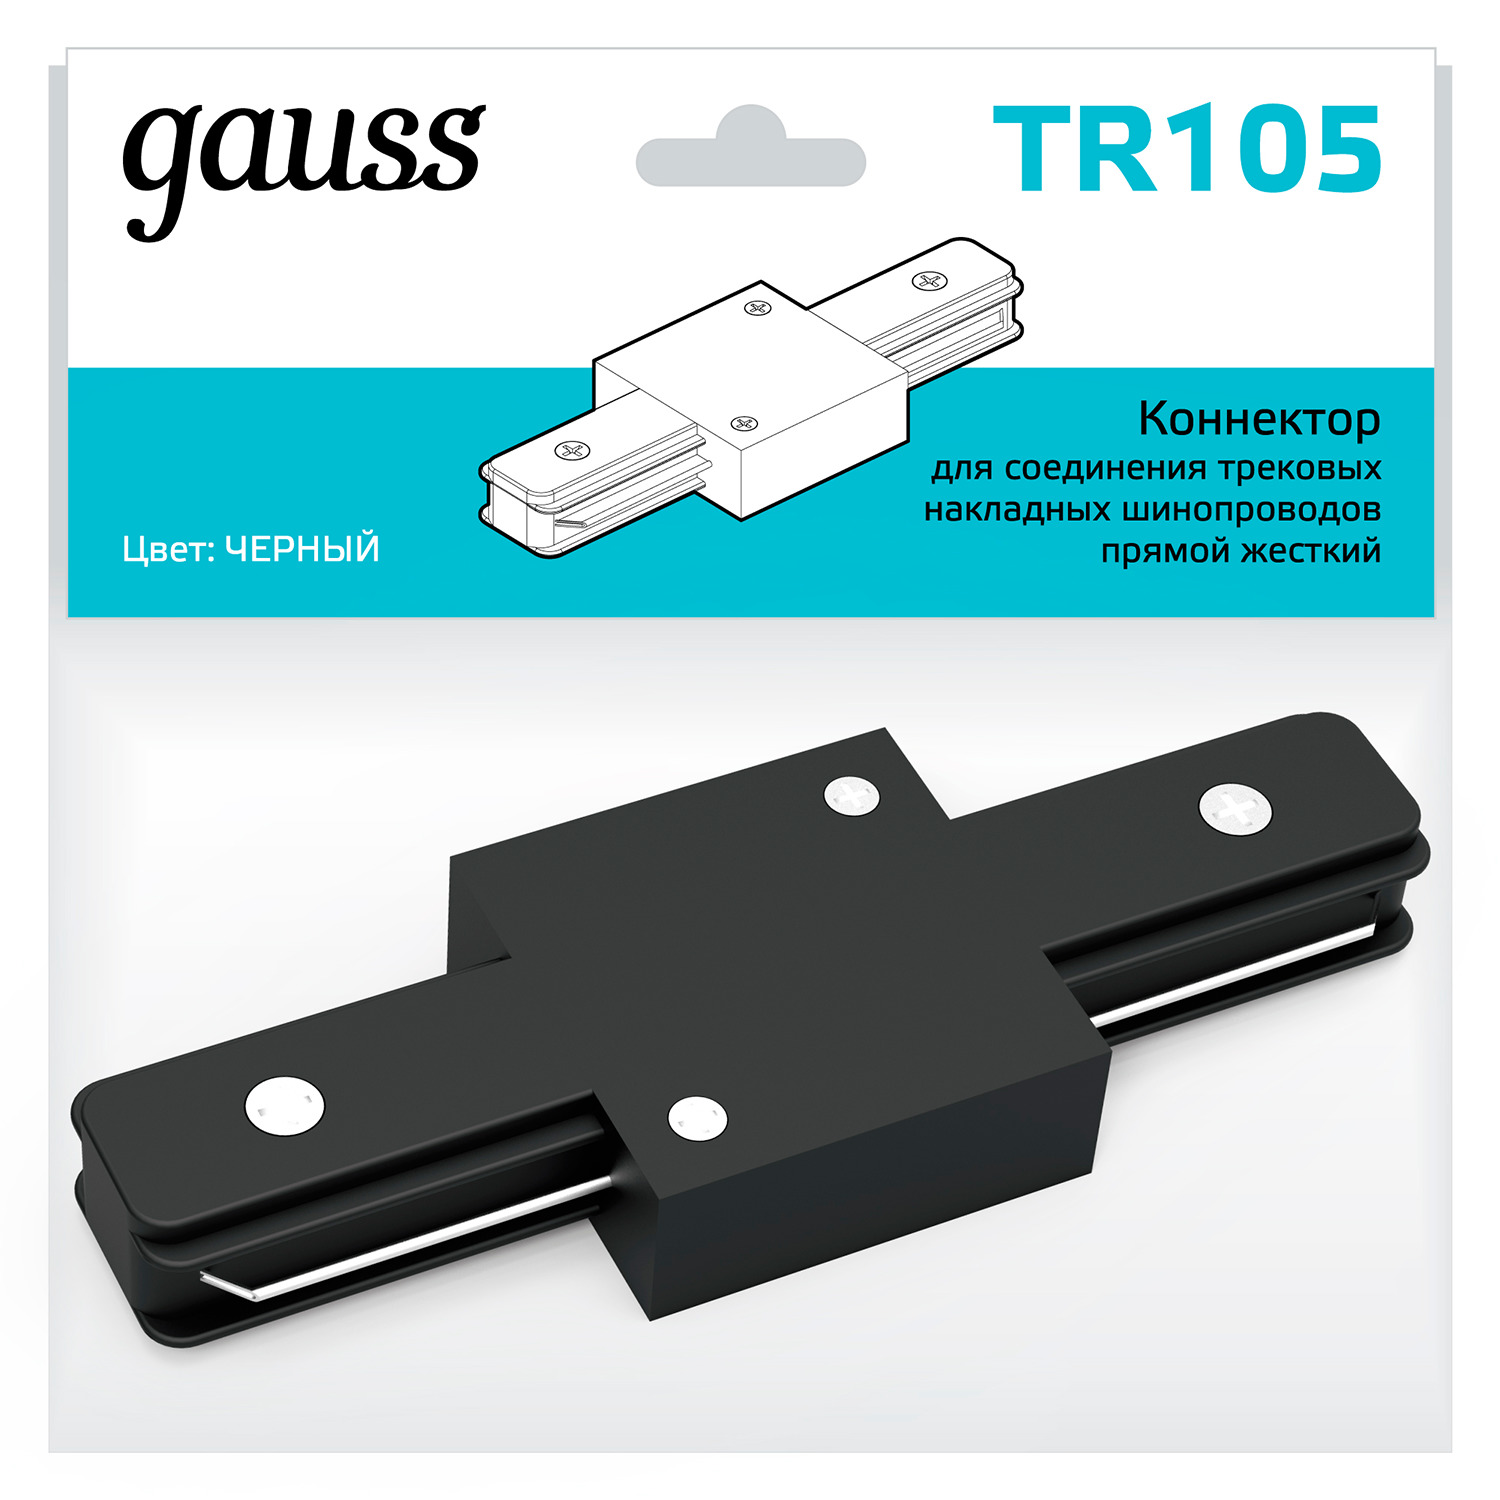 Коннектор Gauss для трековых шинопроводов прямой (I) черный коннектор gauss для трековых шинопроводов t